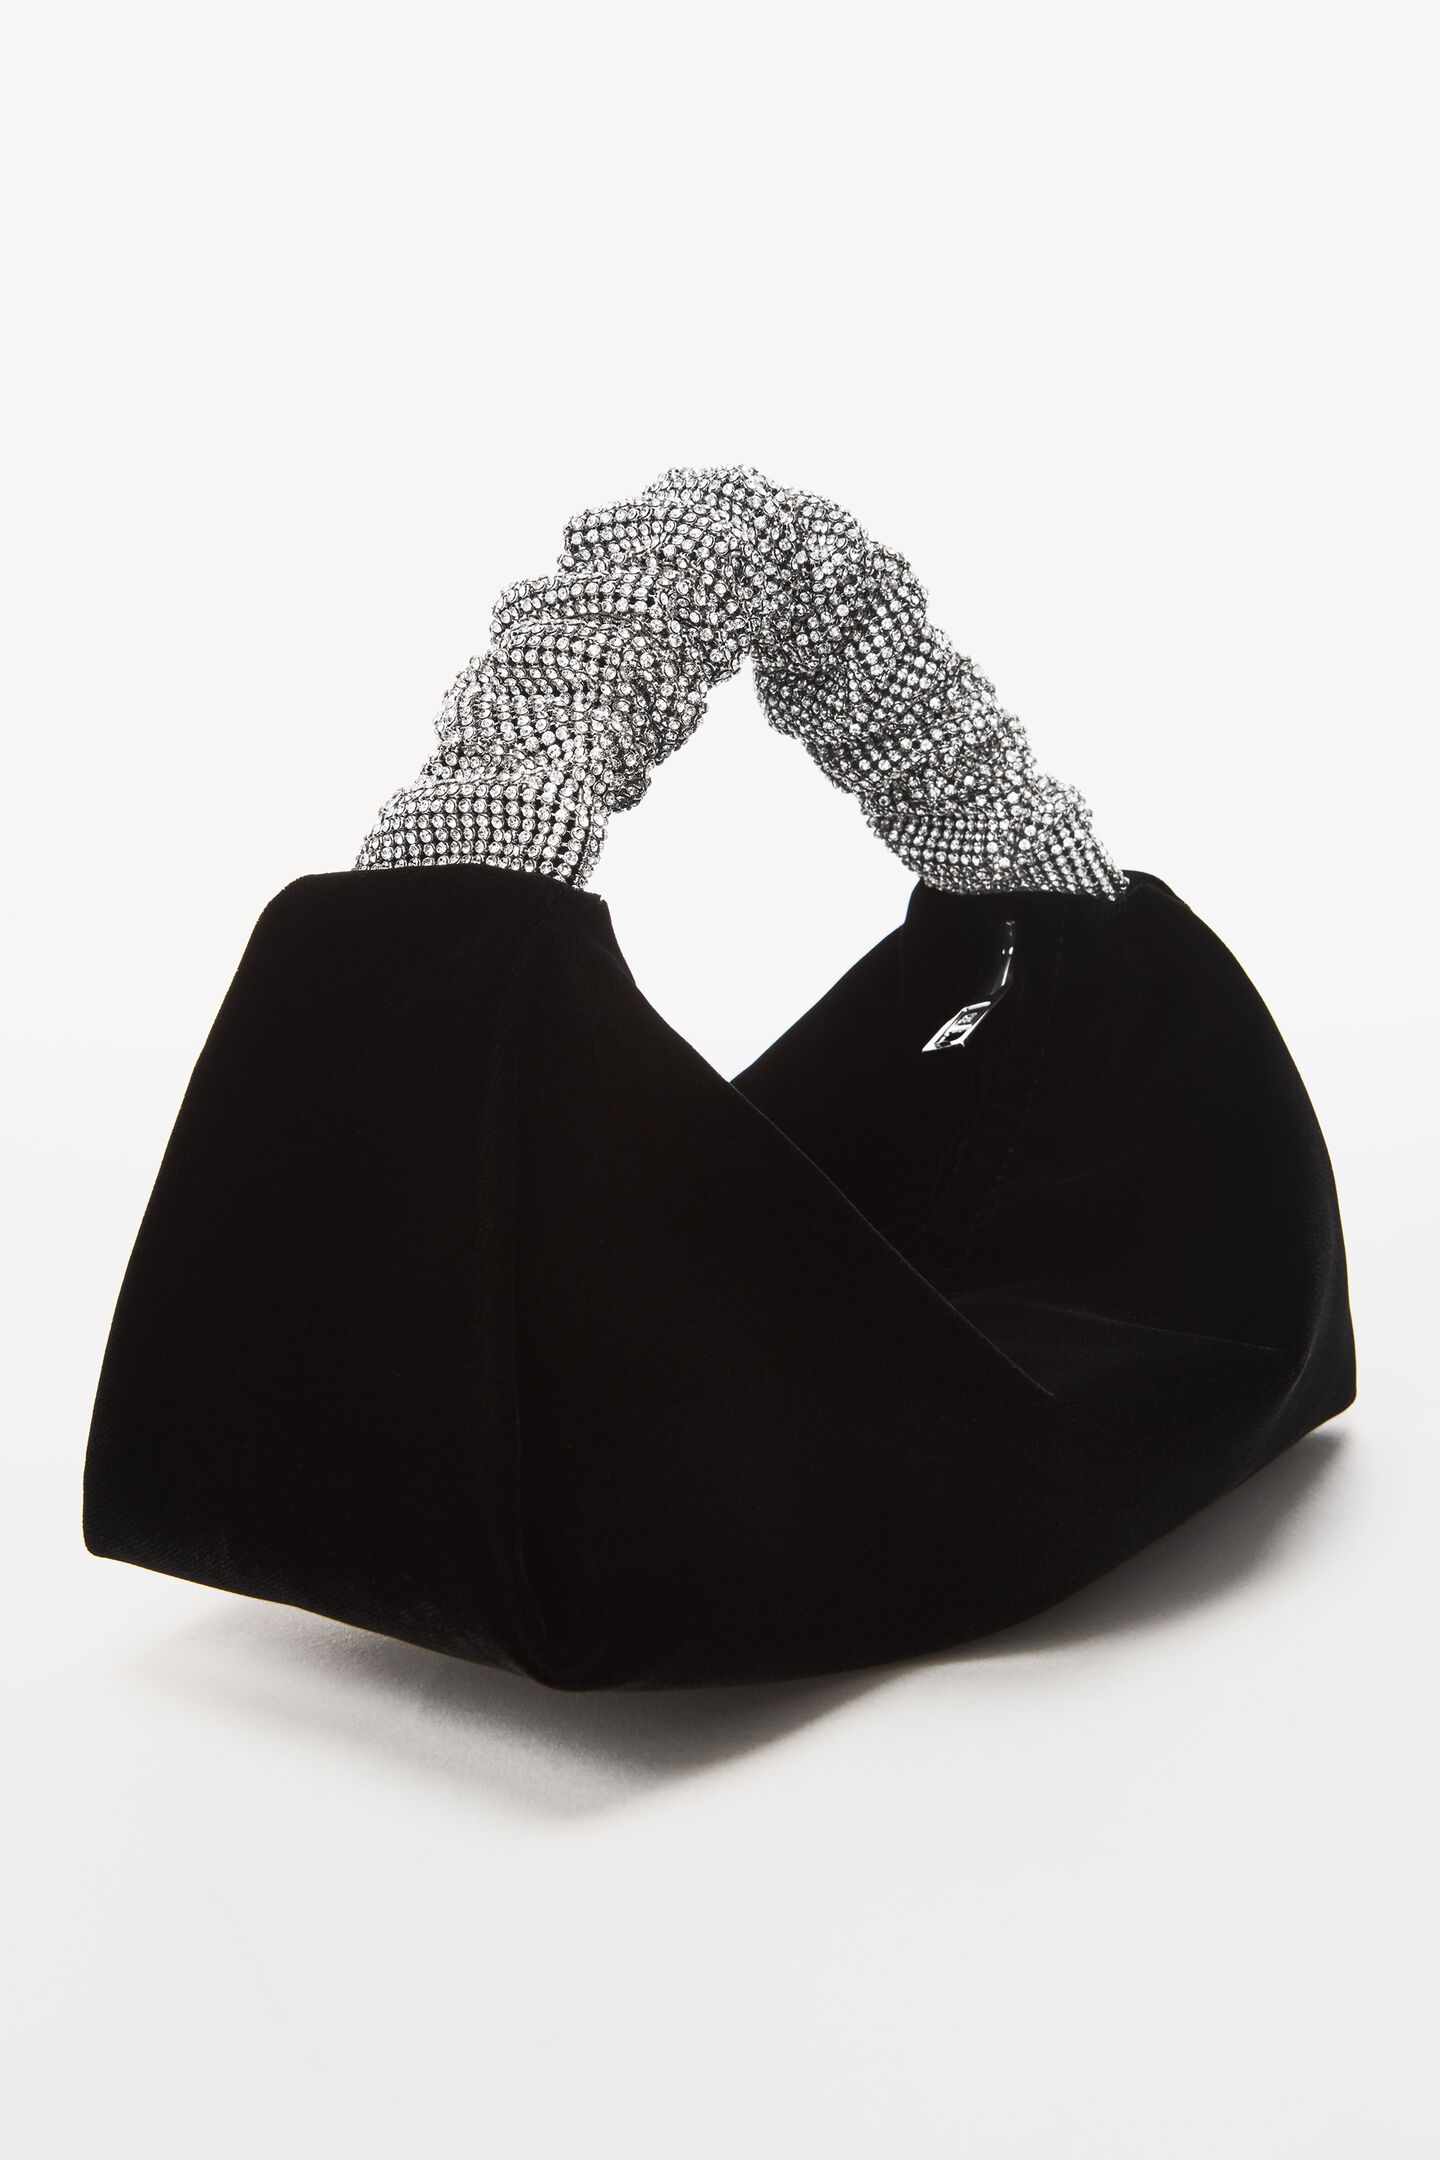 Alexander Wang 'Scrunchie Mini' velvet handbag, Women's Bags